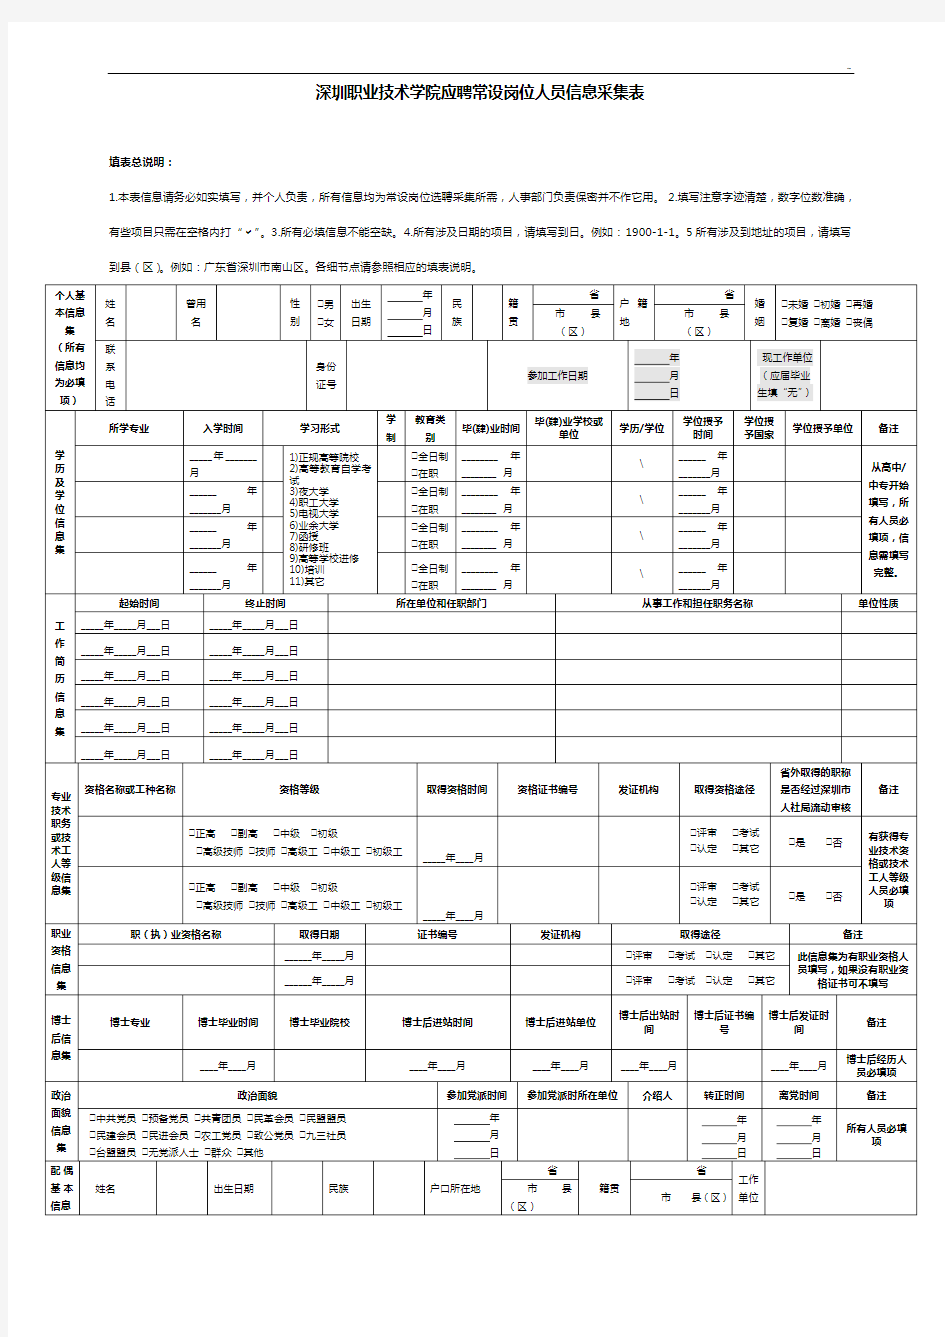 深圳职业技术学院标准规定在编人员基本信息表